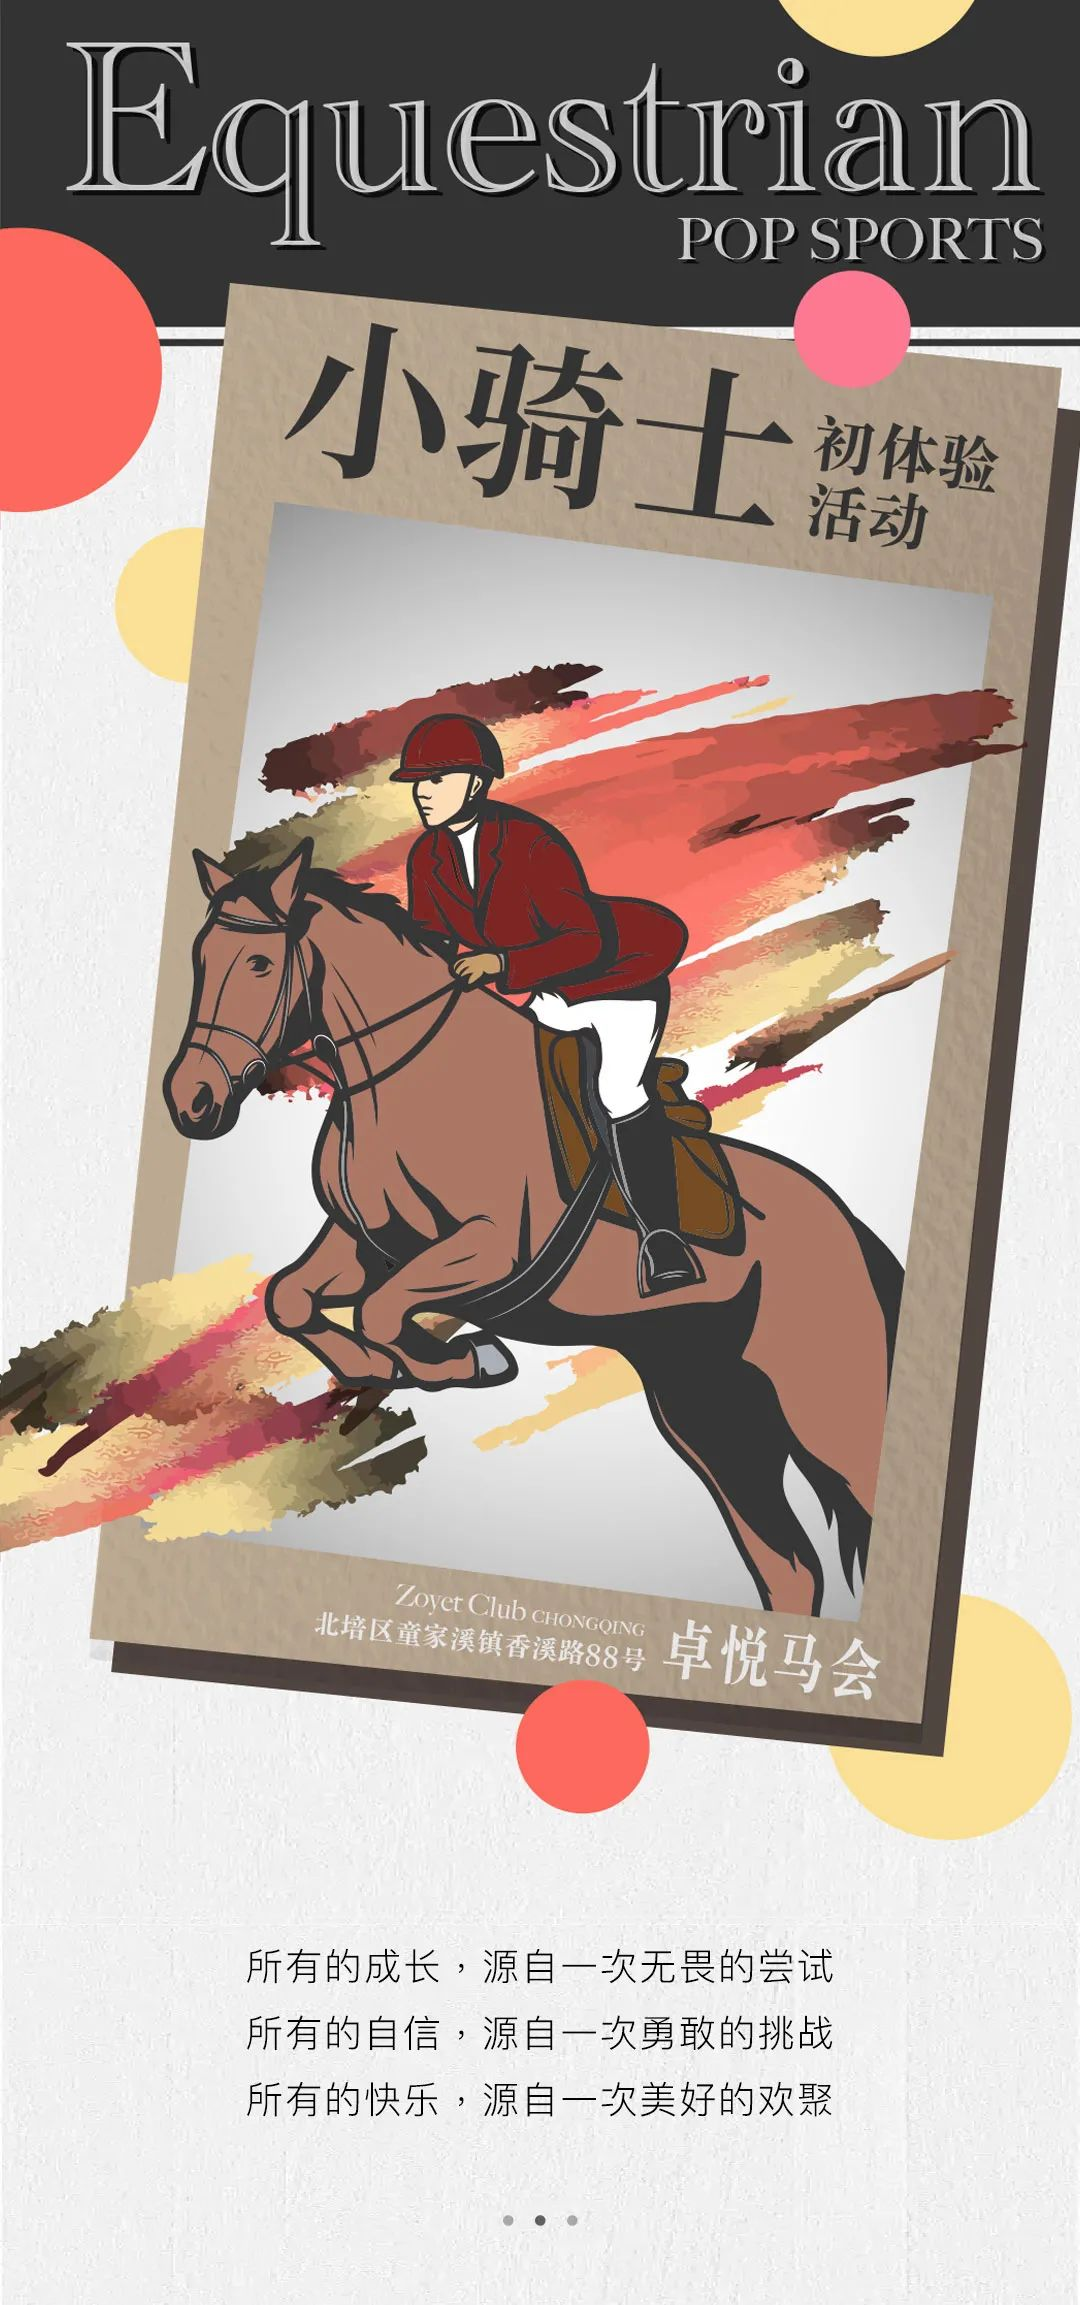 重庆IFS丨POP Sports小骑士初体验